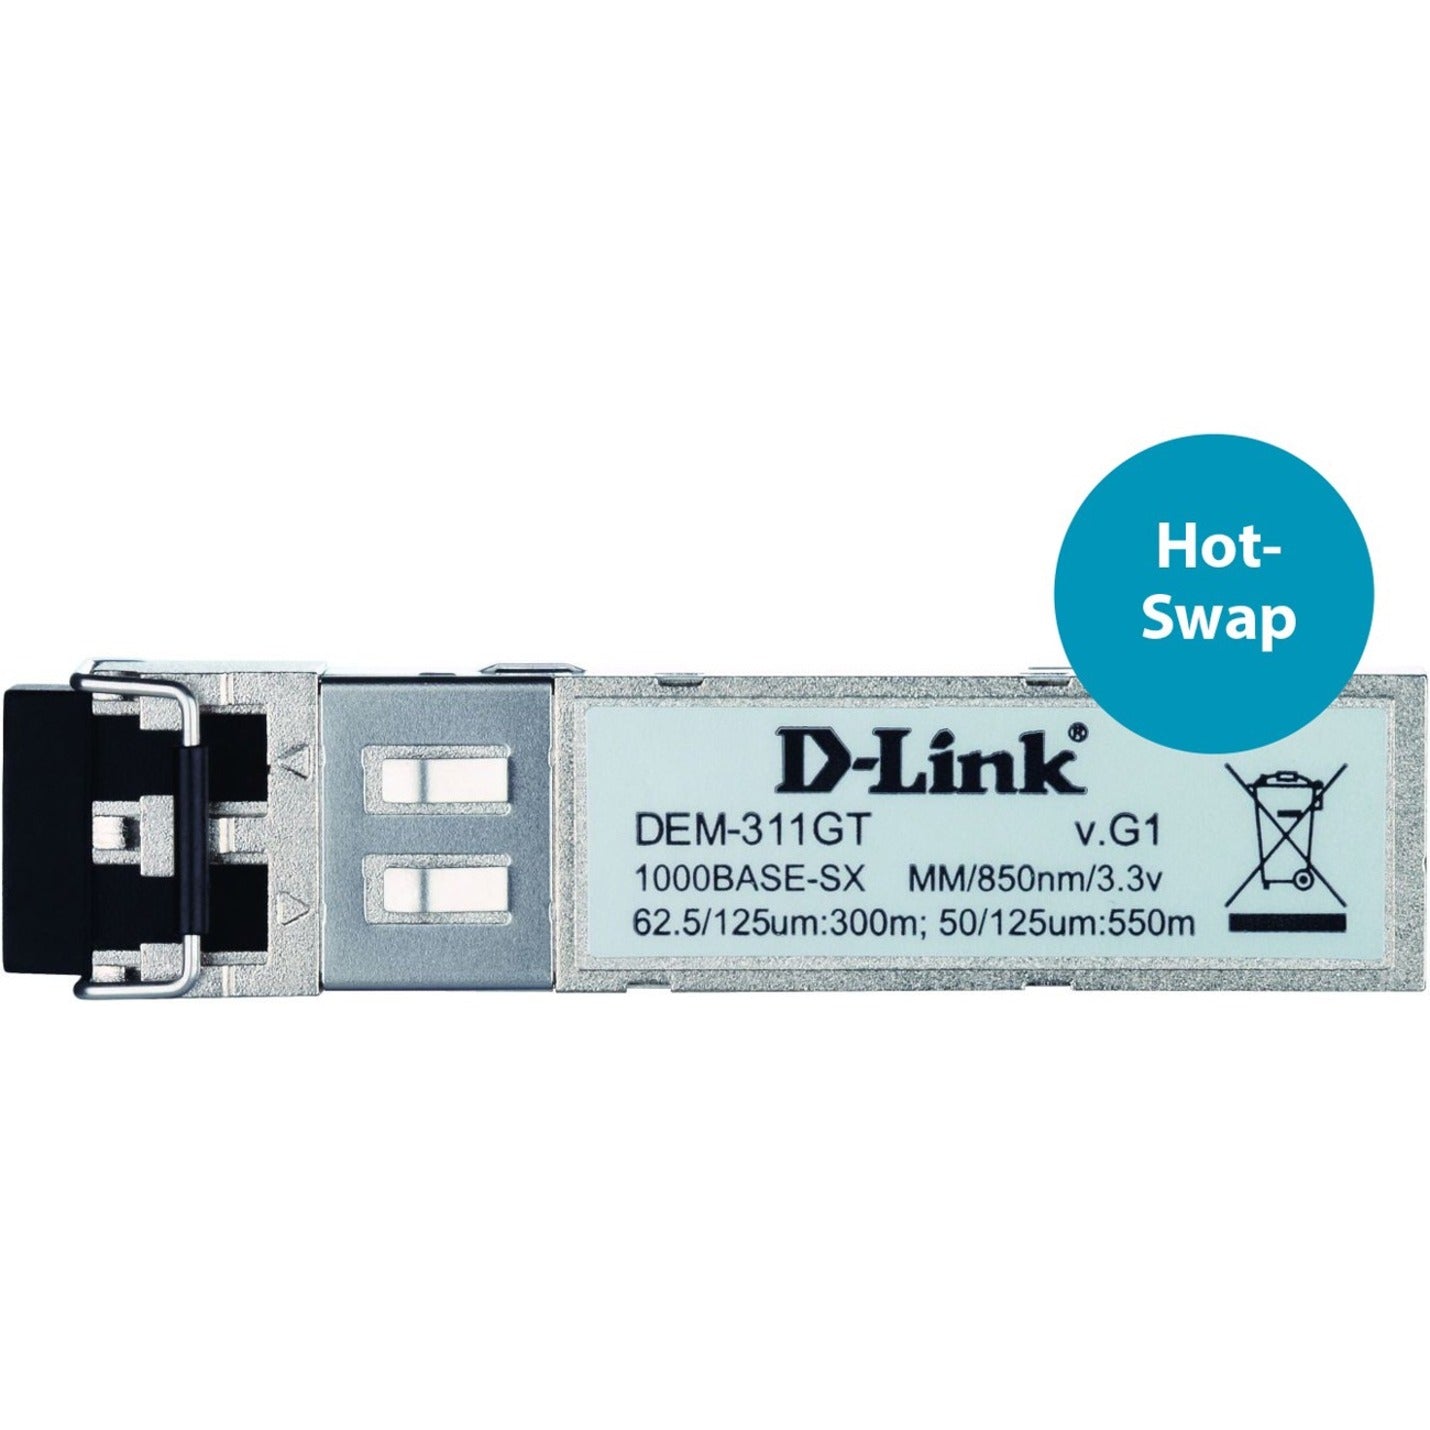 D-Link DEM-311GT 1000Base GBIC - 1000Base-SX, Multi-mode Fiber, 1804.46 ft Distance Supported